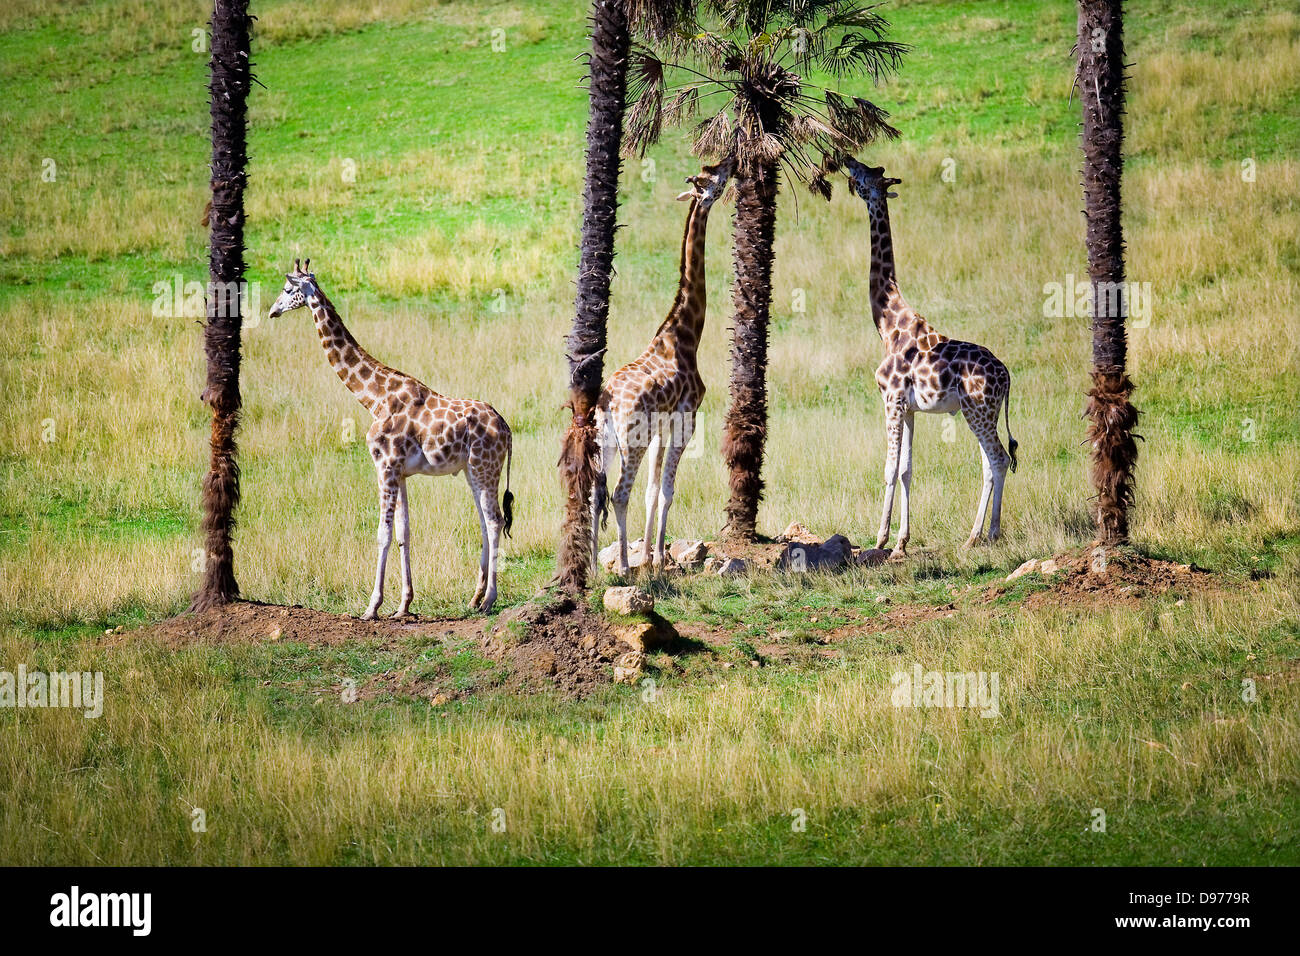 giraffe (Giraffa camelopardalis). Stock Photo